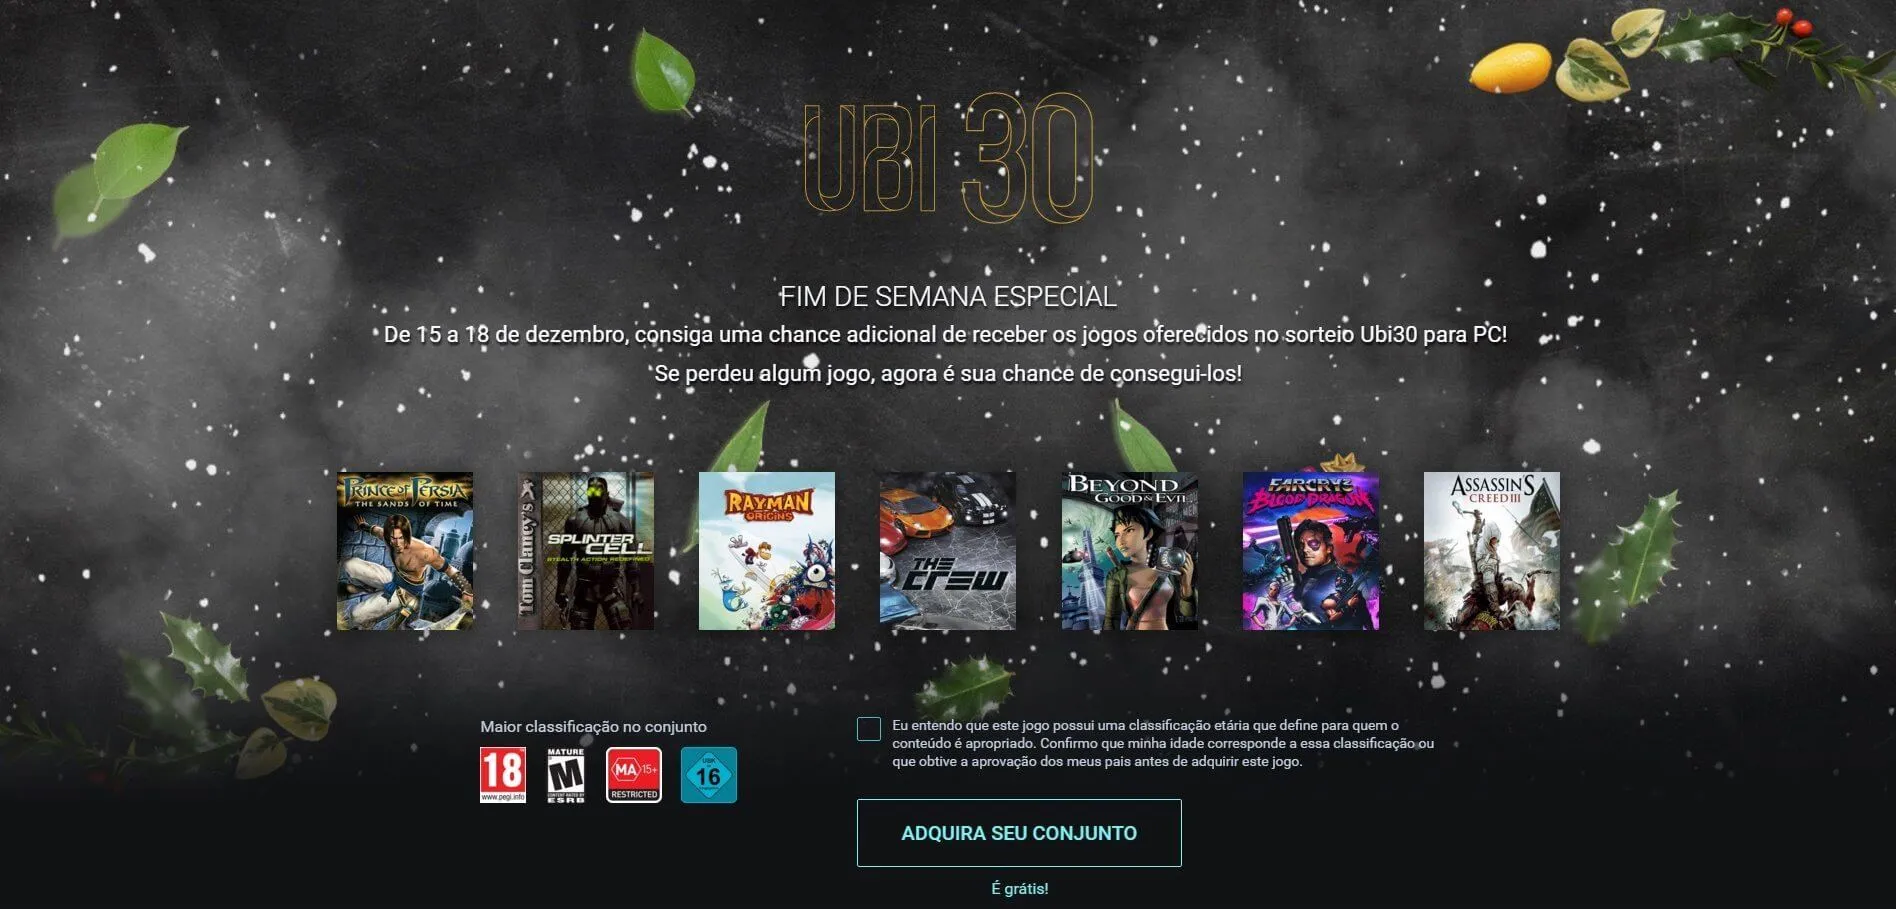 Ubi 30: Ubisoft의 7가지 무료 게임